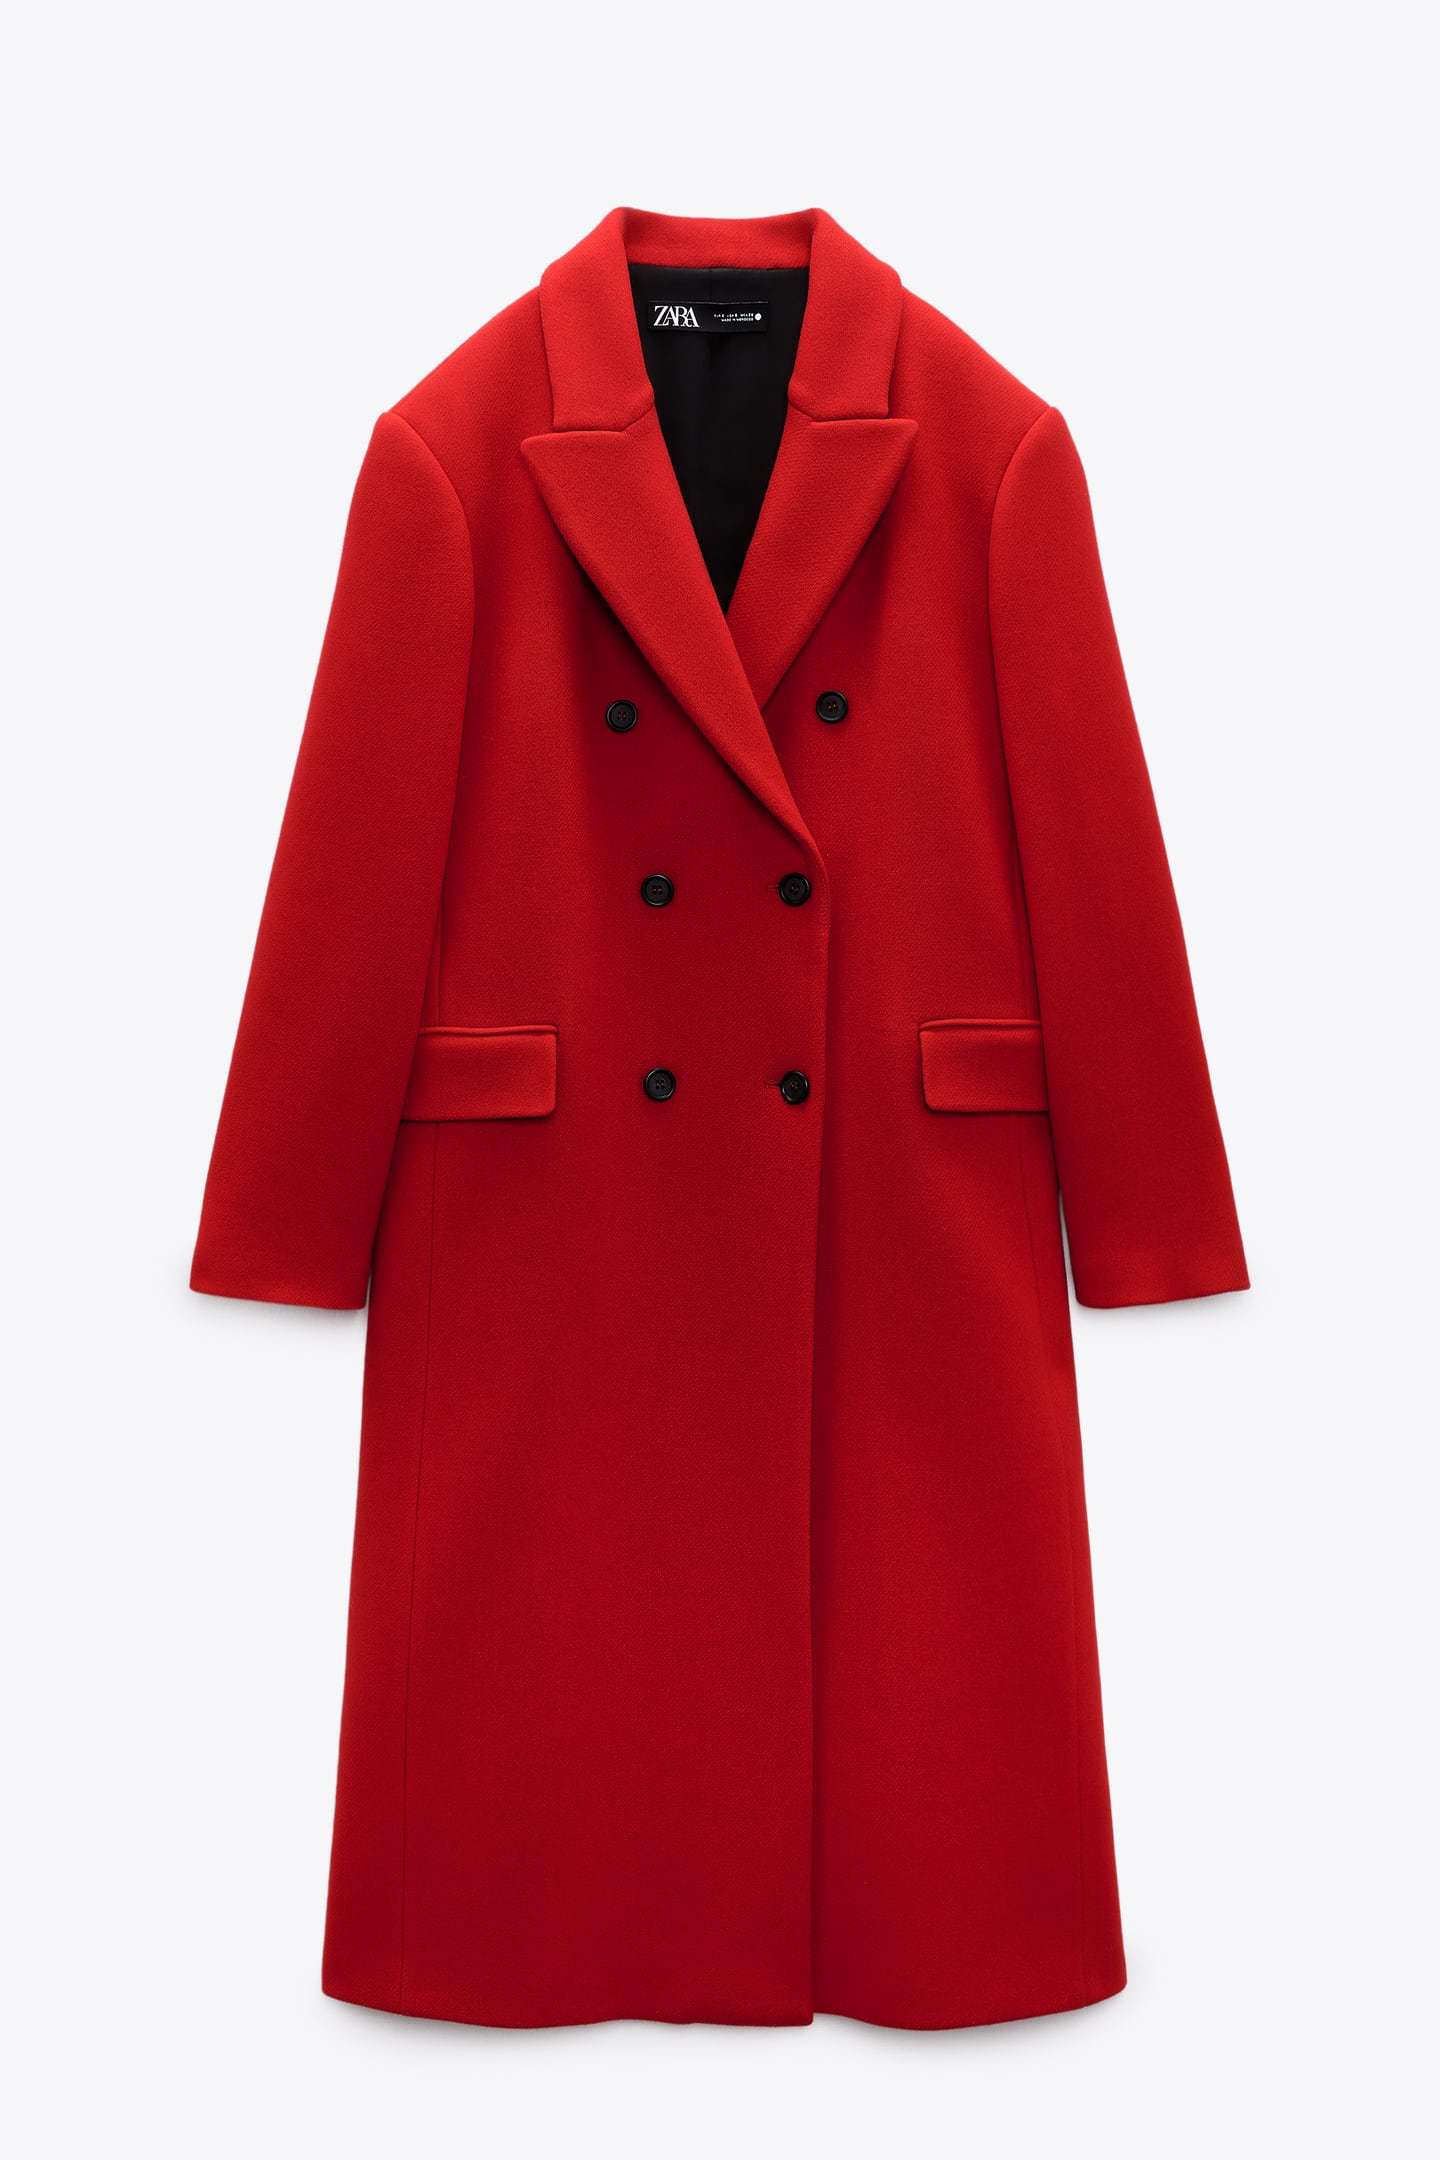 Abrigo rojo de Zara.